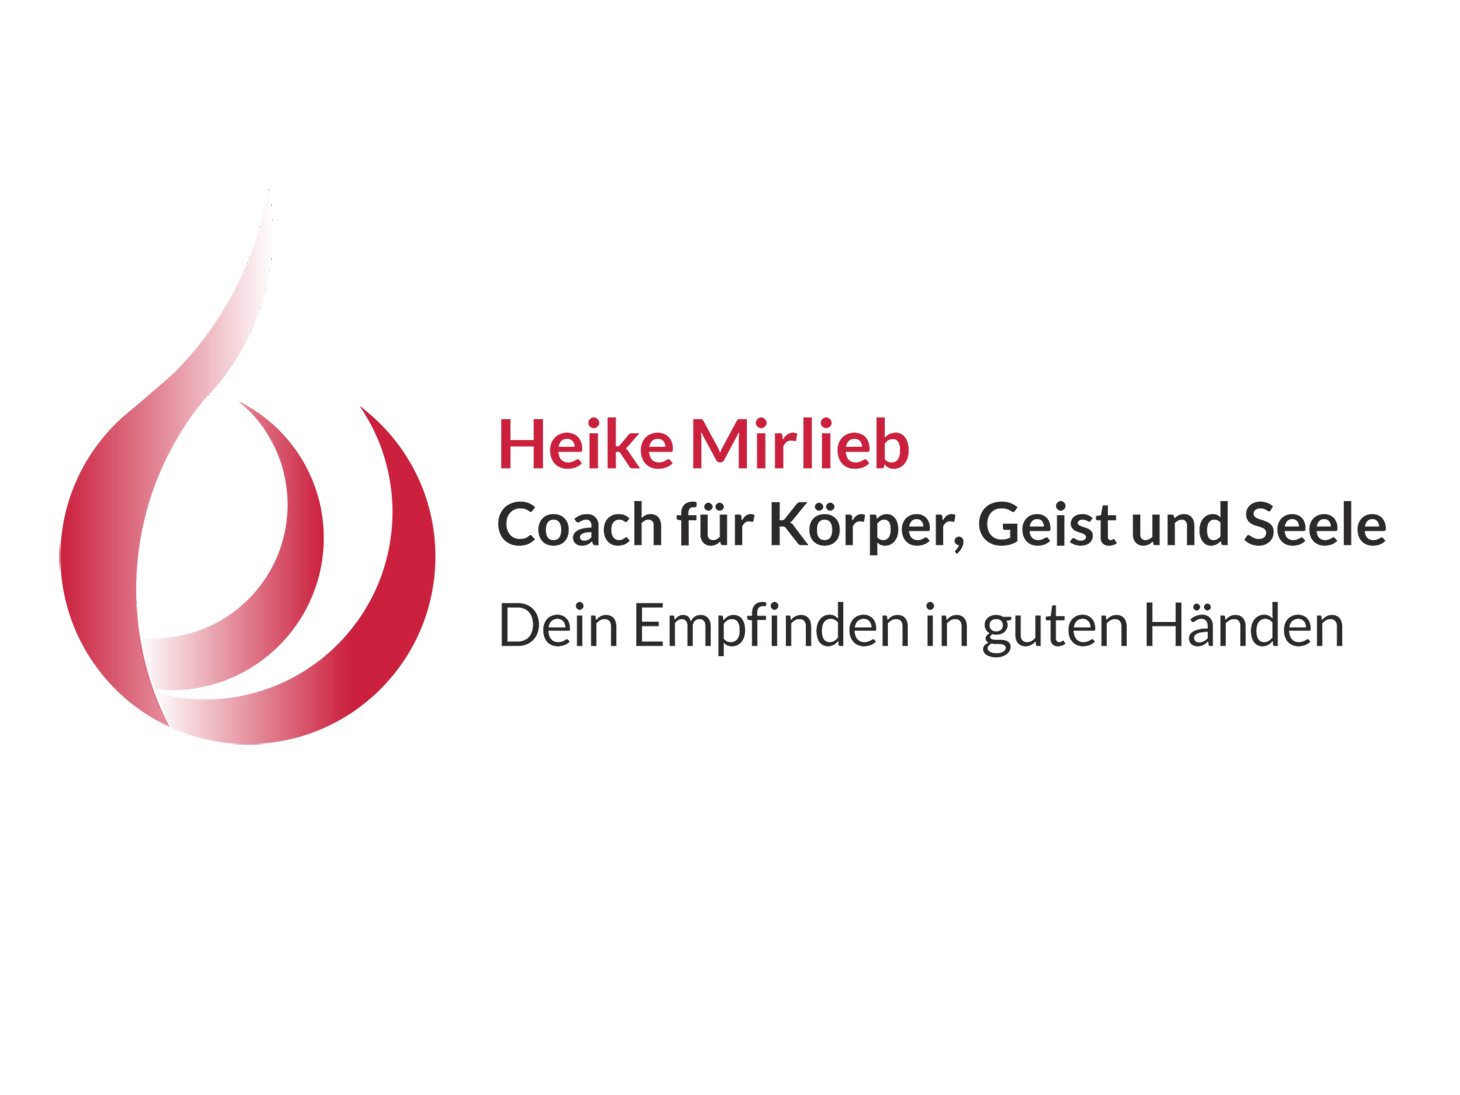 Heike Mirlieb Coach für Körper, Geist und Seele